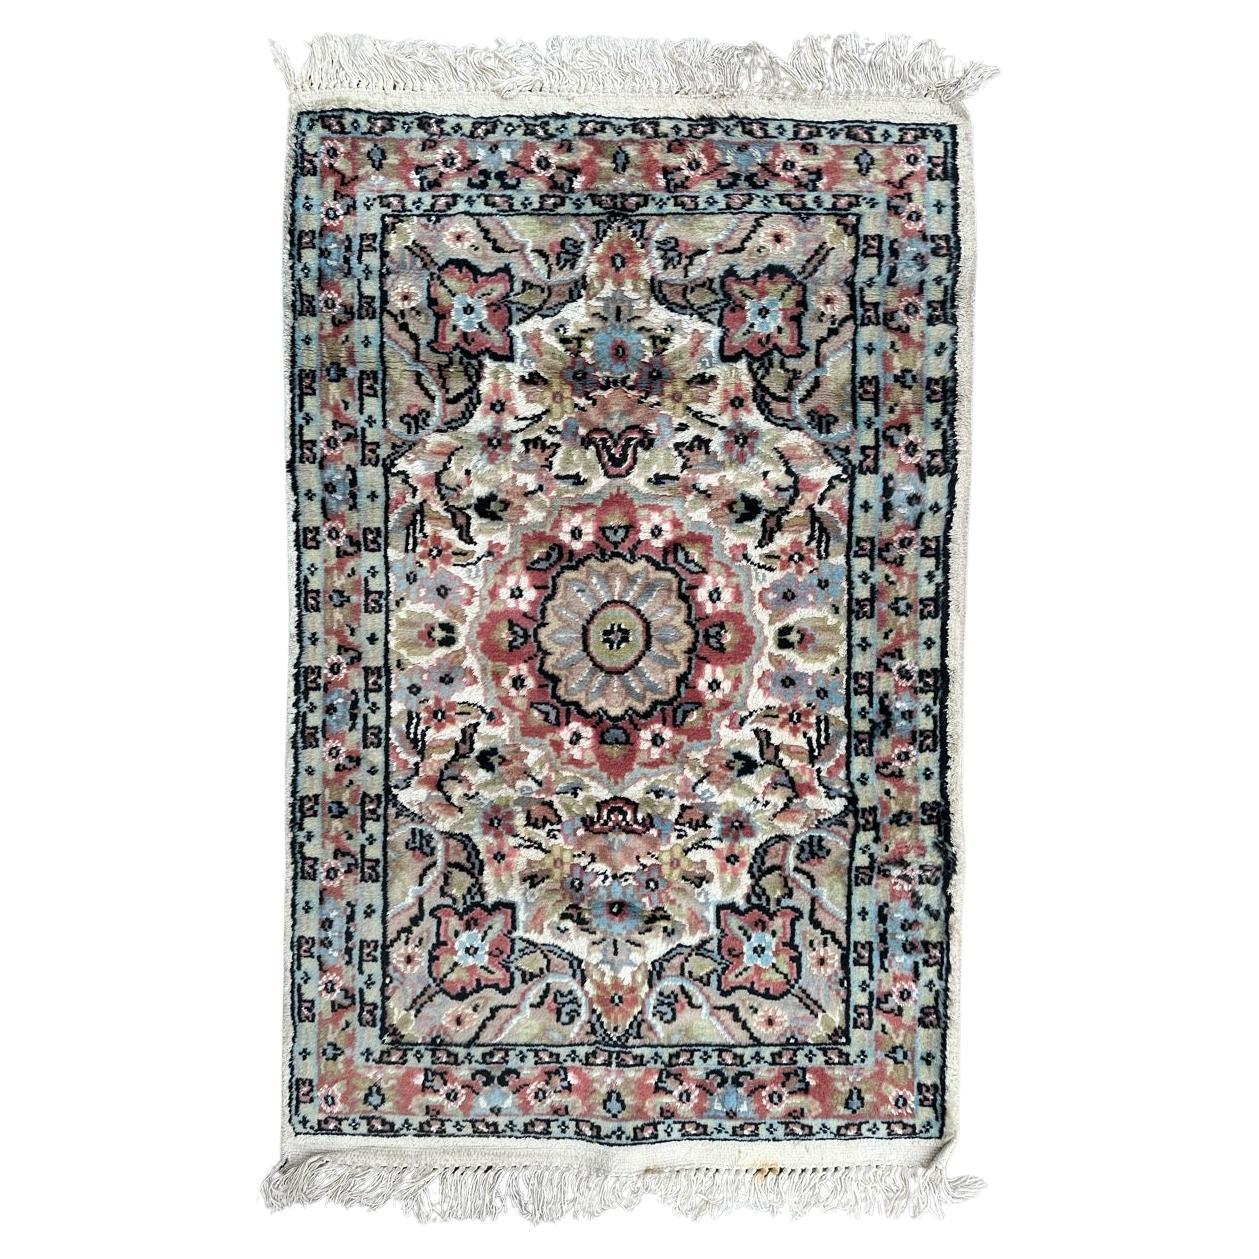 Beautiful little vintage silk and wool Pakistani rug 